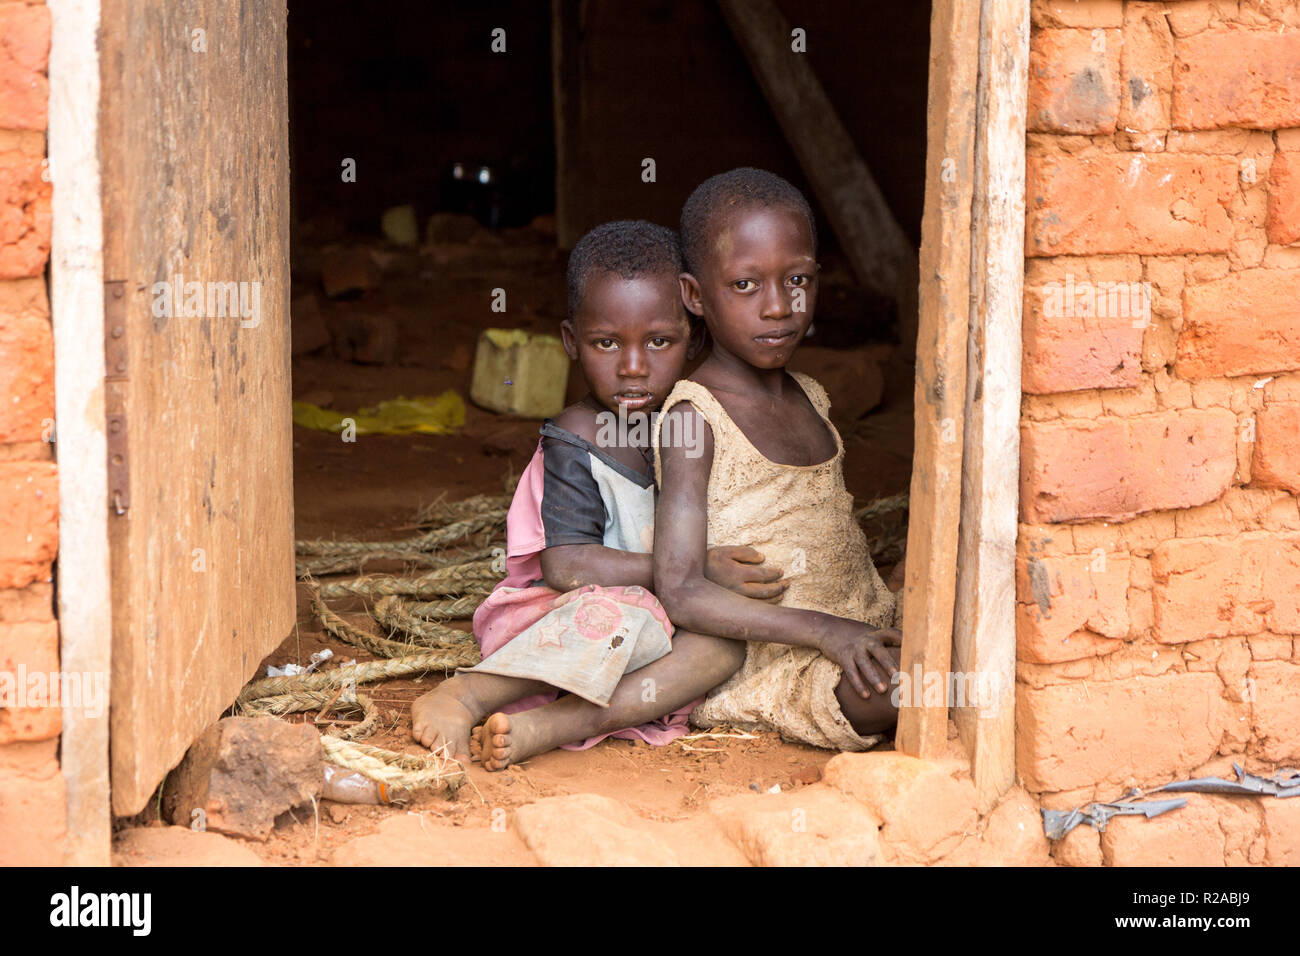 Zwei ugandische Kinder in zerlumpter Kleidung in einer Umarmung auf einem unbefestigten Boden an der Tür eines Hauses sitzen. Stockfoto